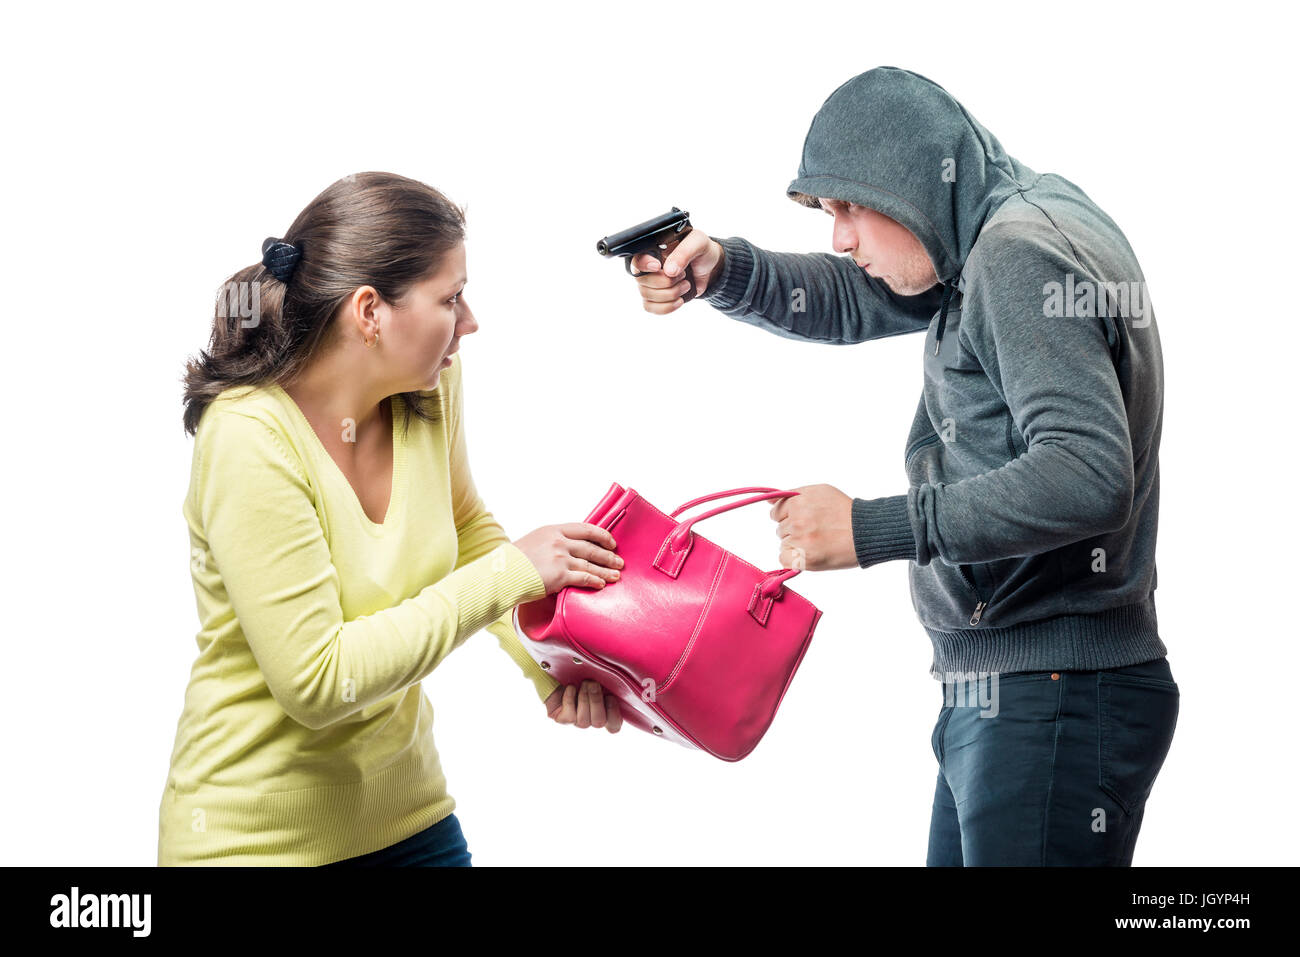 Thief threatens a victim with a gun, steals a bag Stock Photo